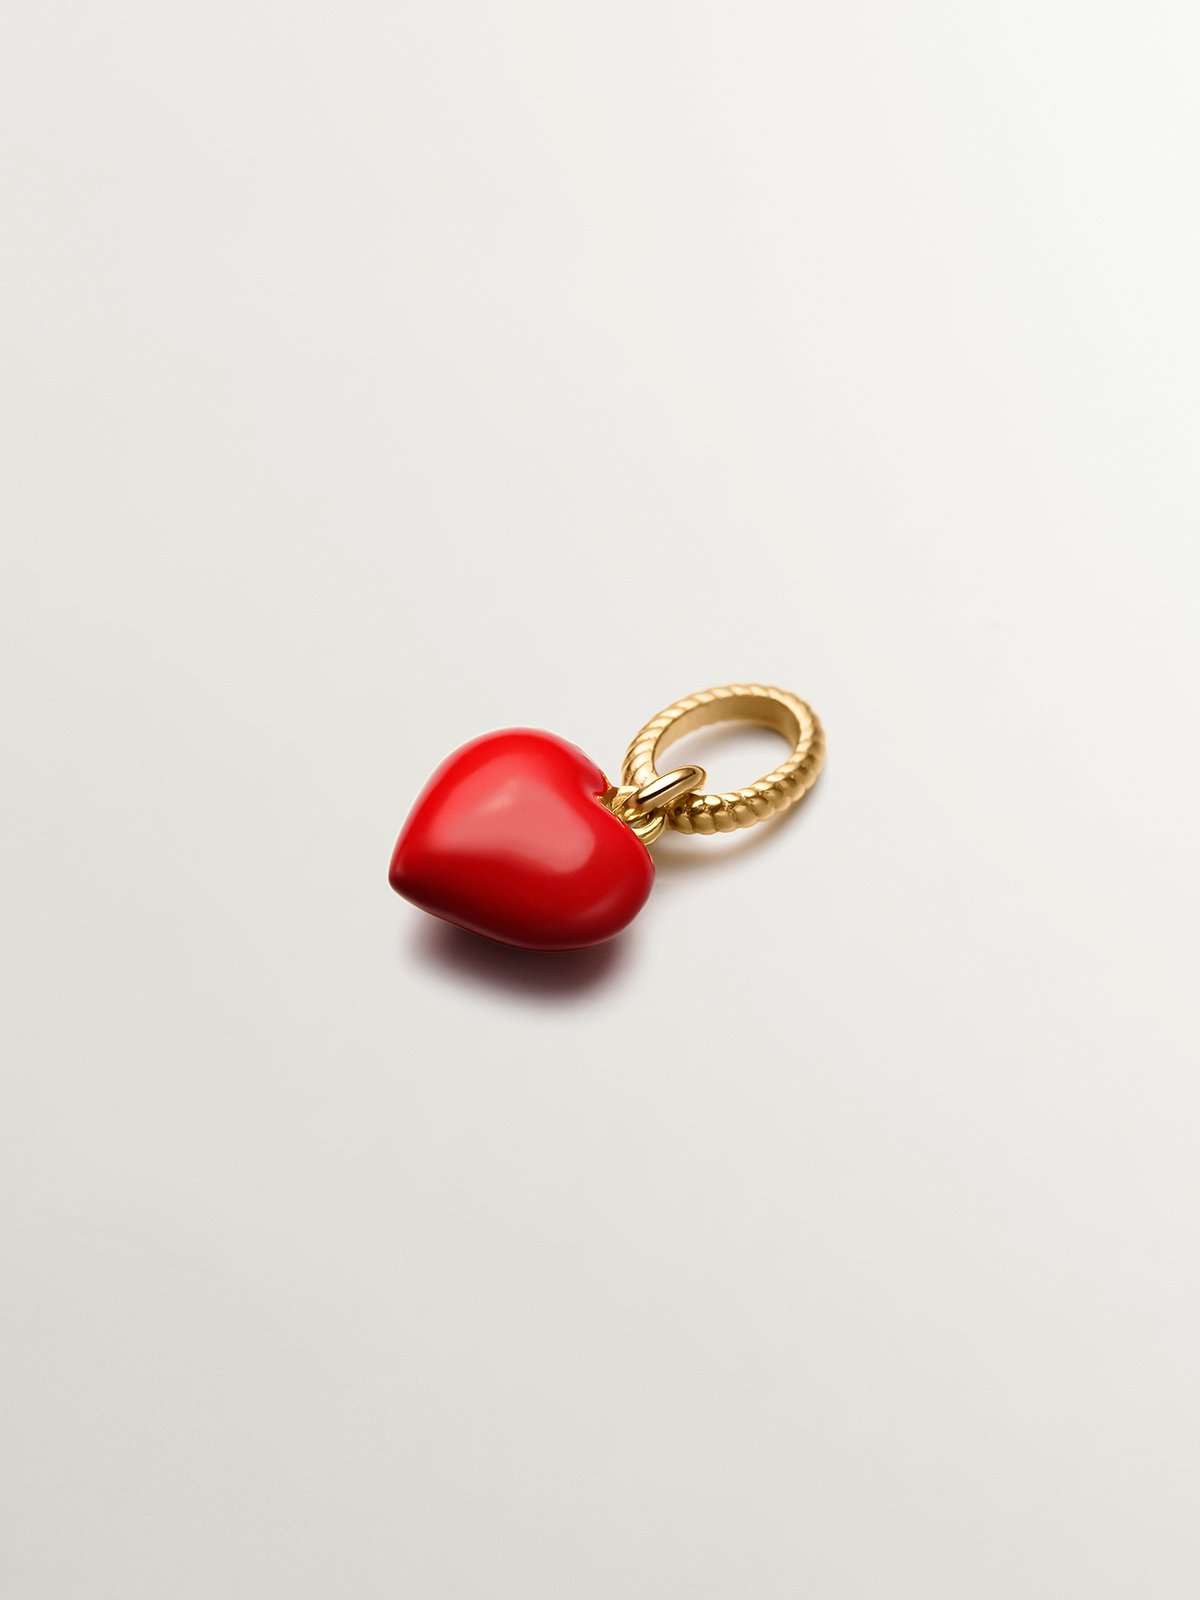 Charm de plata 925 bañada en oro amarillo de 18K con forma de corazón y esmalte rojo